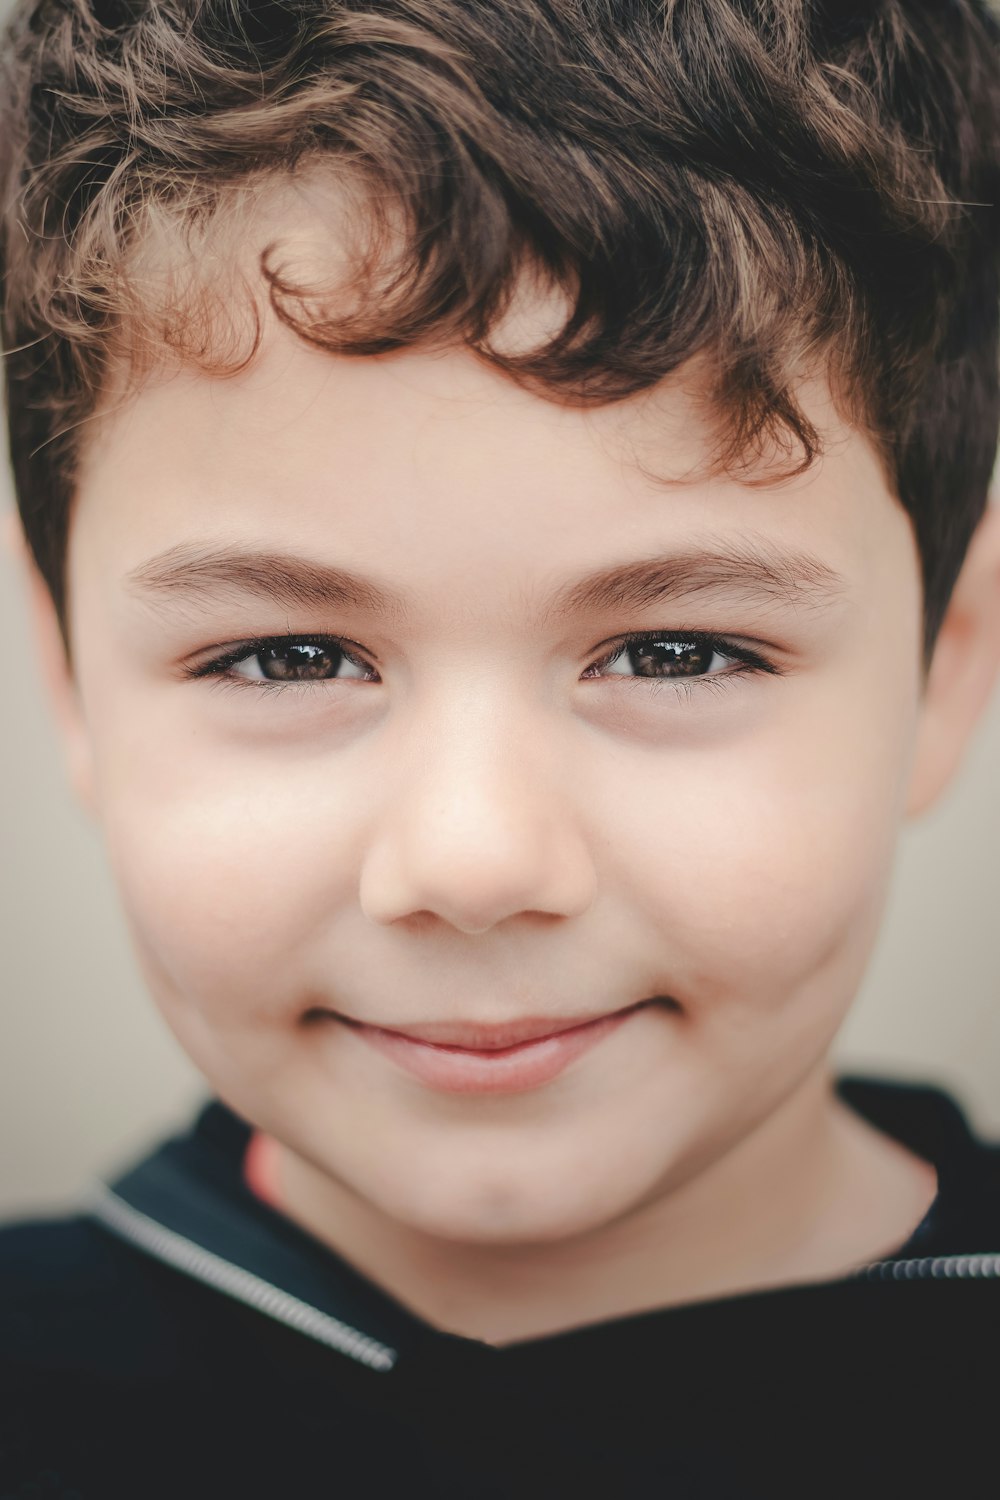 un gros plan du visage d’un enfant souriant